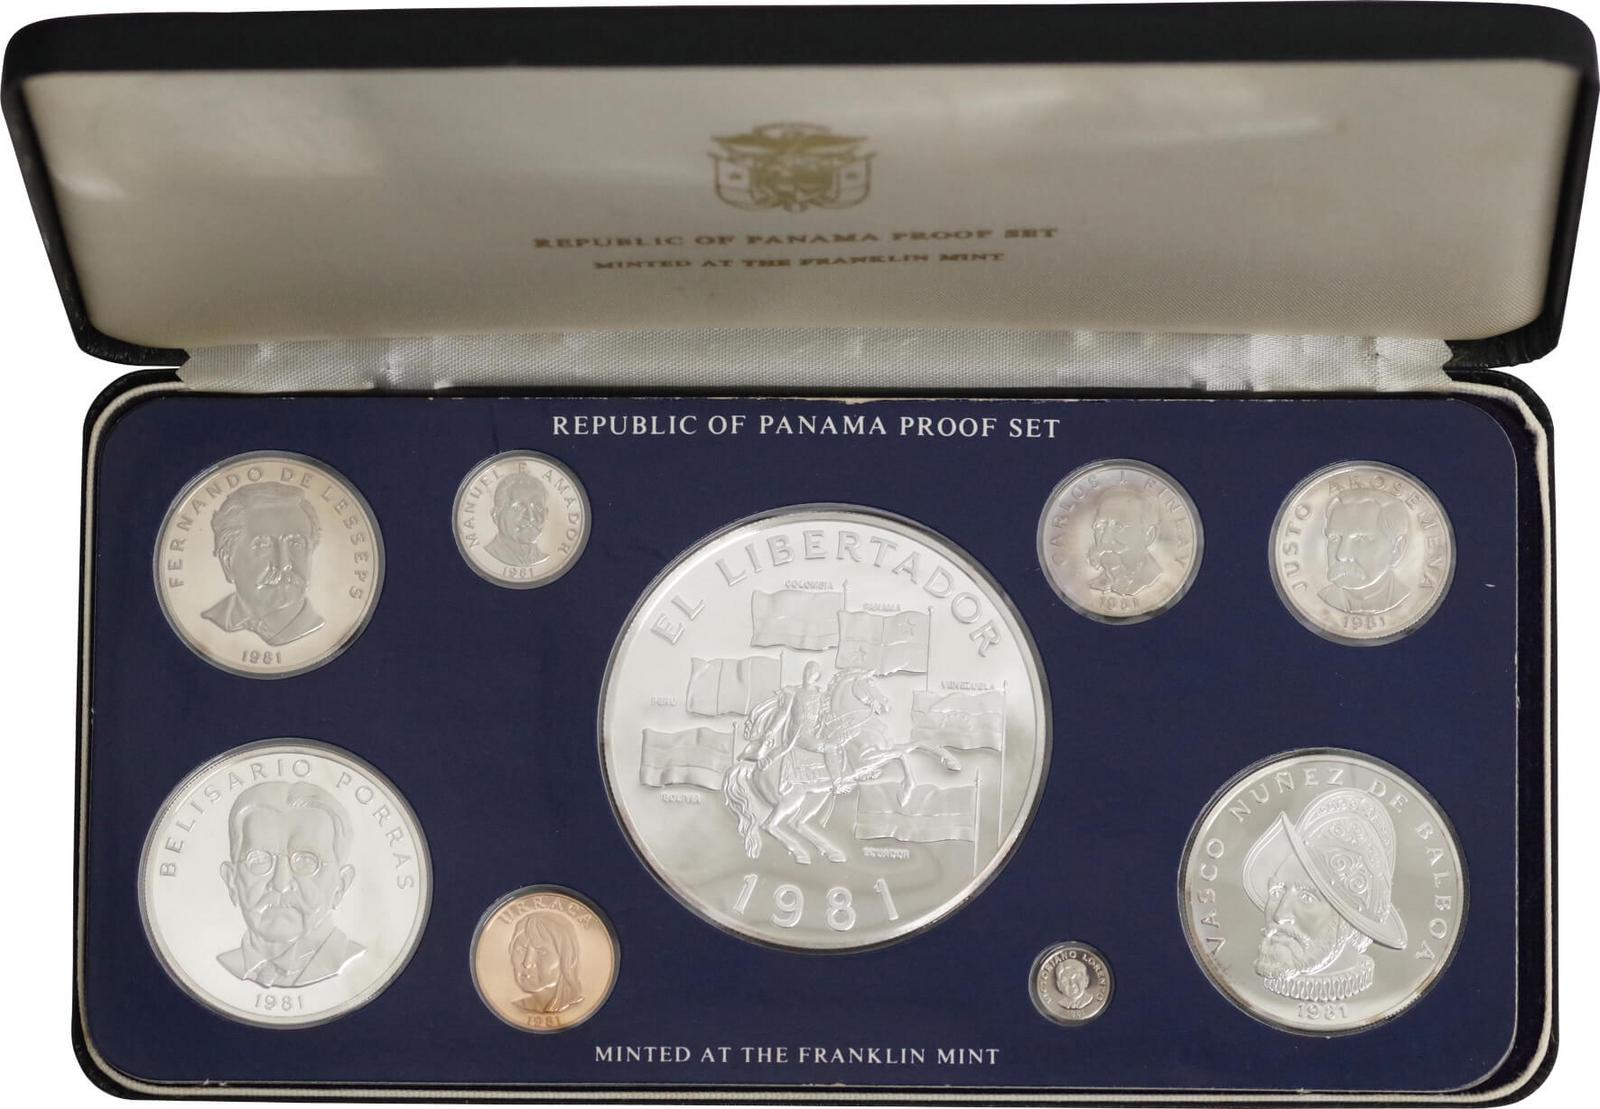 パナマ共和国 1975年度 公式通貨 プルーフセット - コレクション、趣味